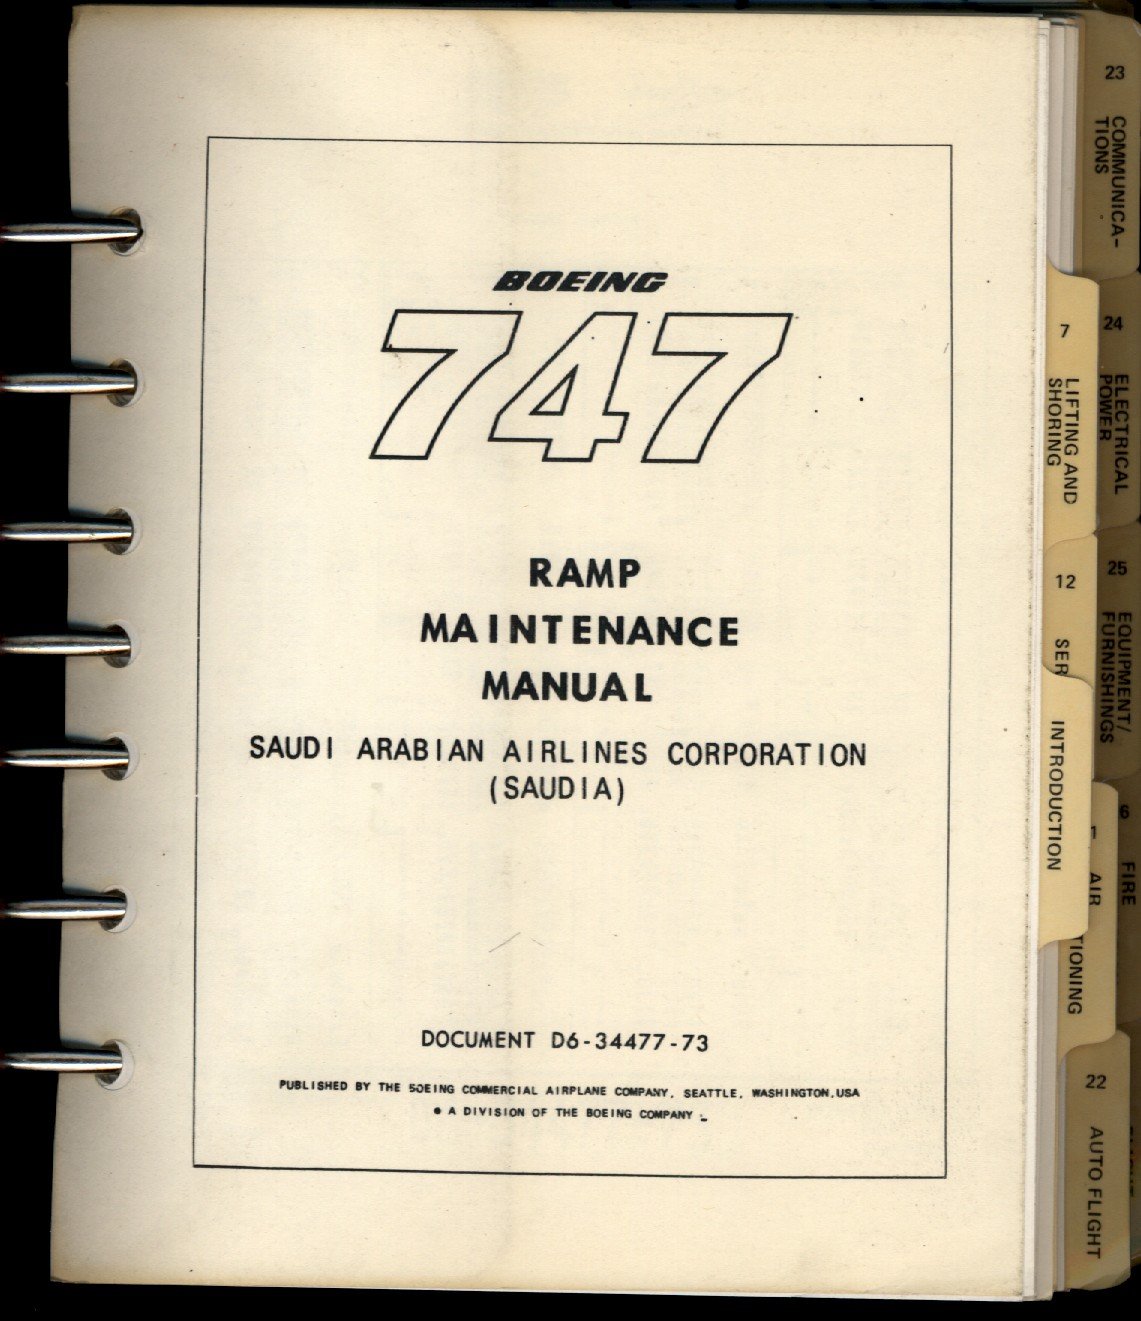 Boeing Maintenance Manual